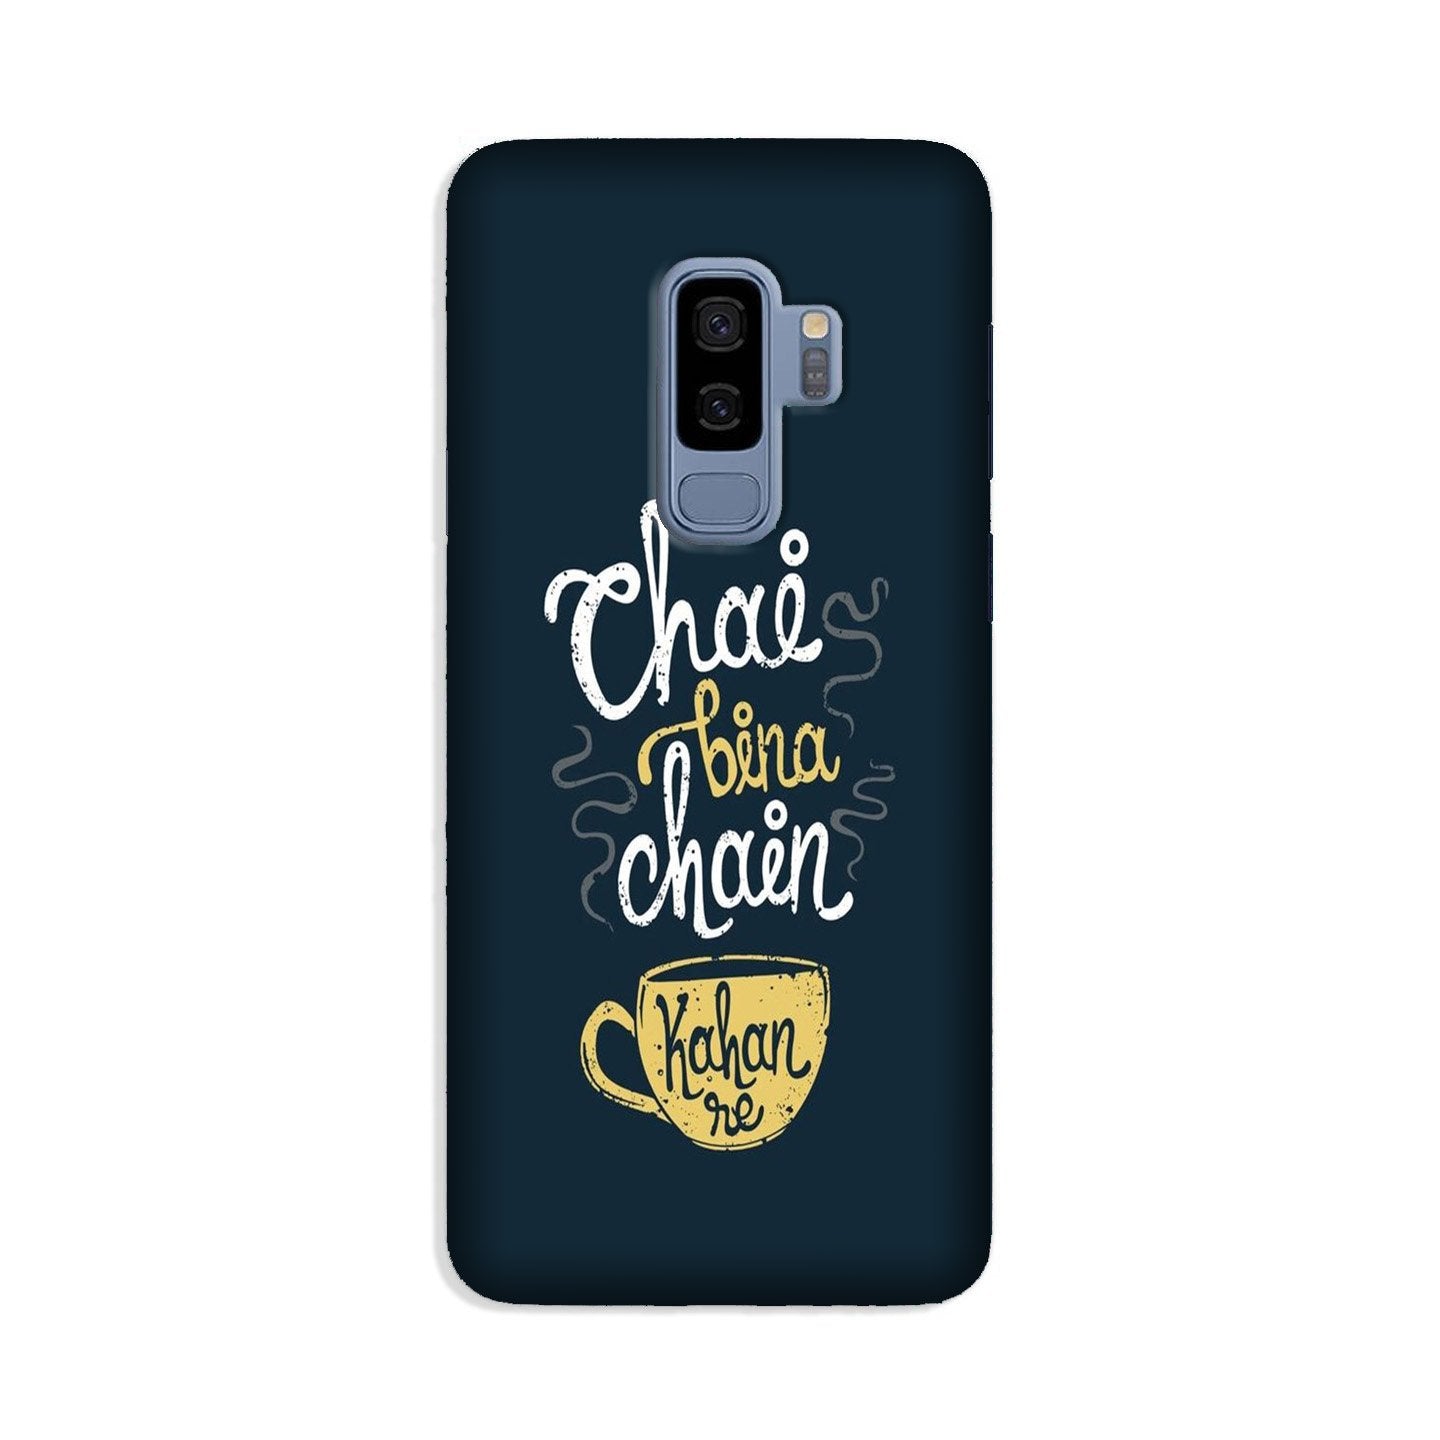 Chai Bina Chain Kahan Case for Galaxy S9 Plus(Design - 144)